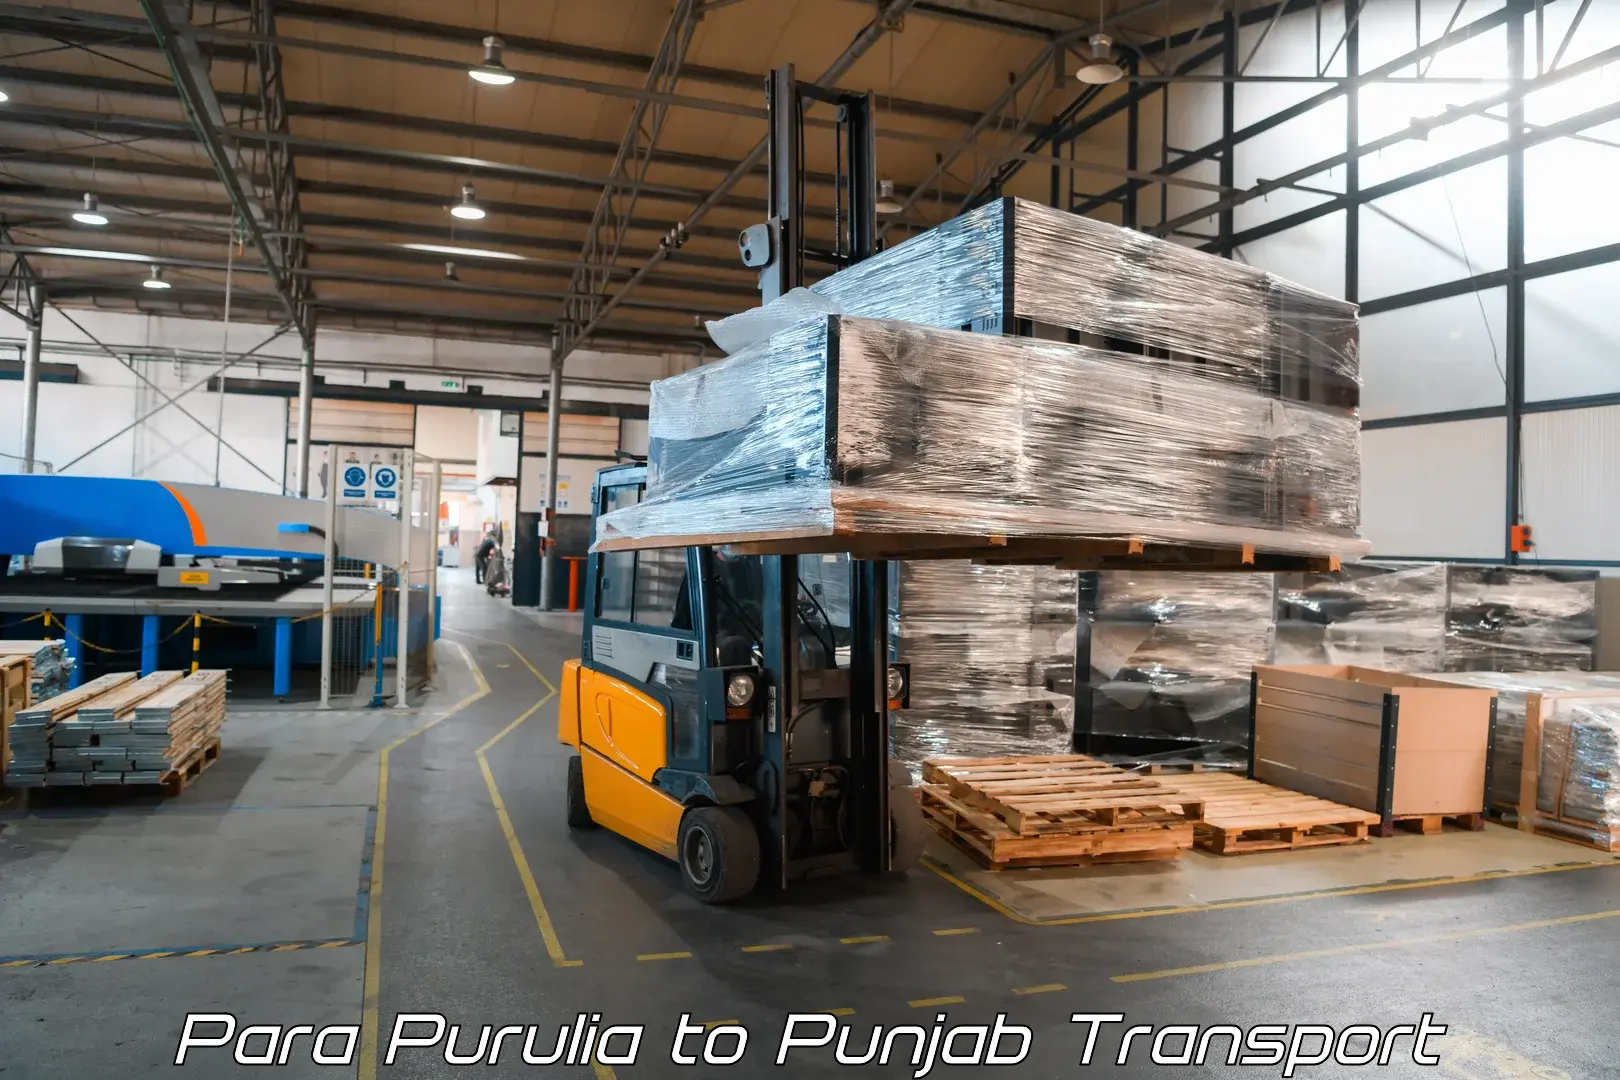 Two wheeler parcel service Para Purulia to Punjab